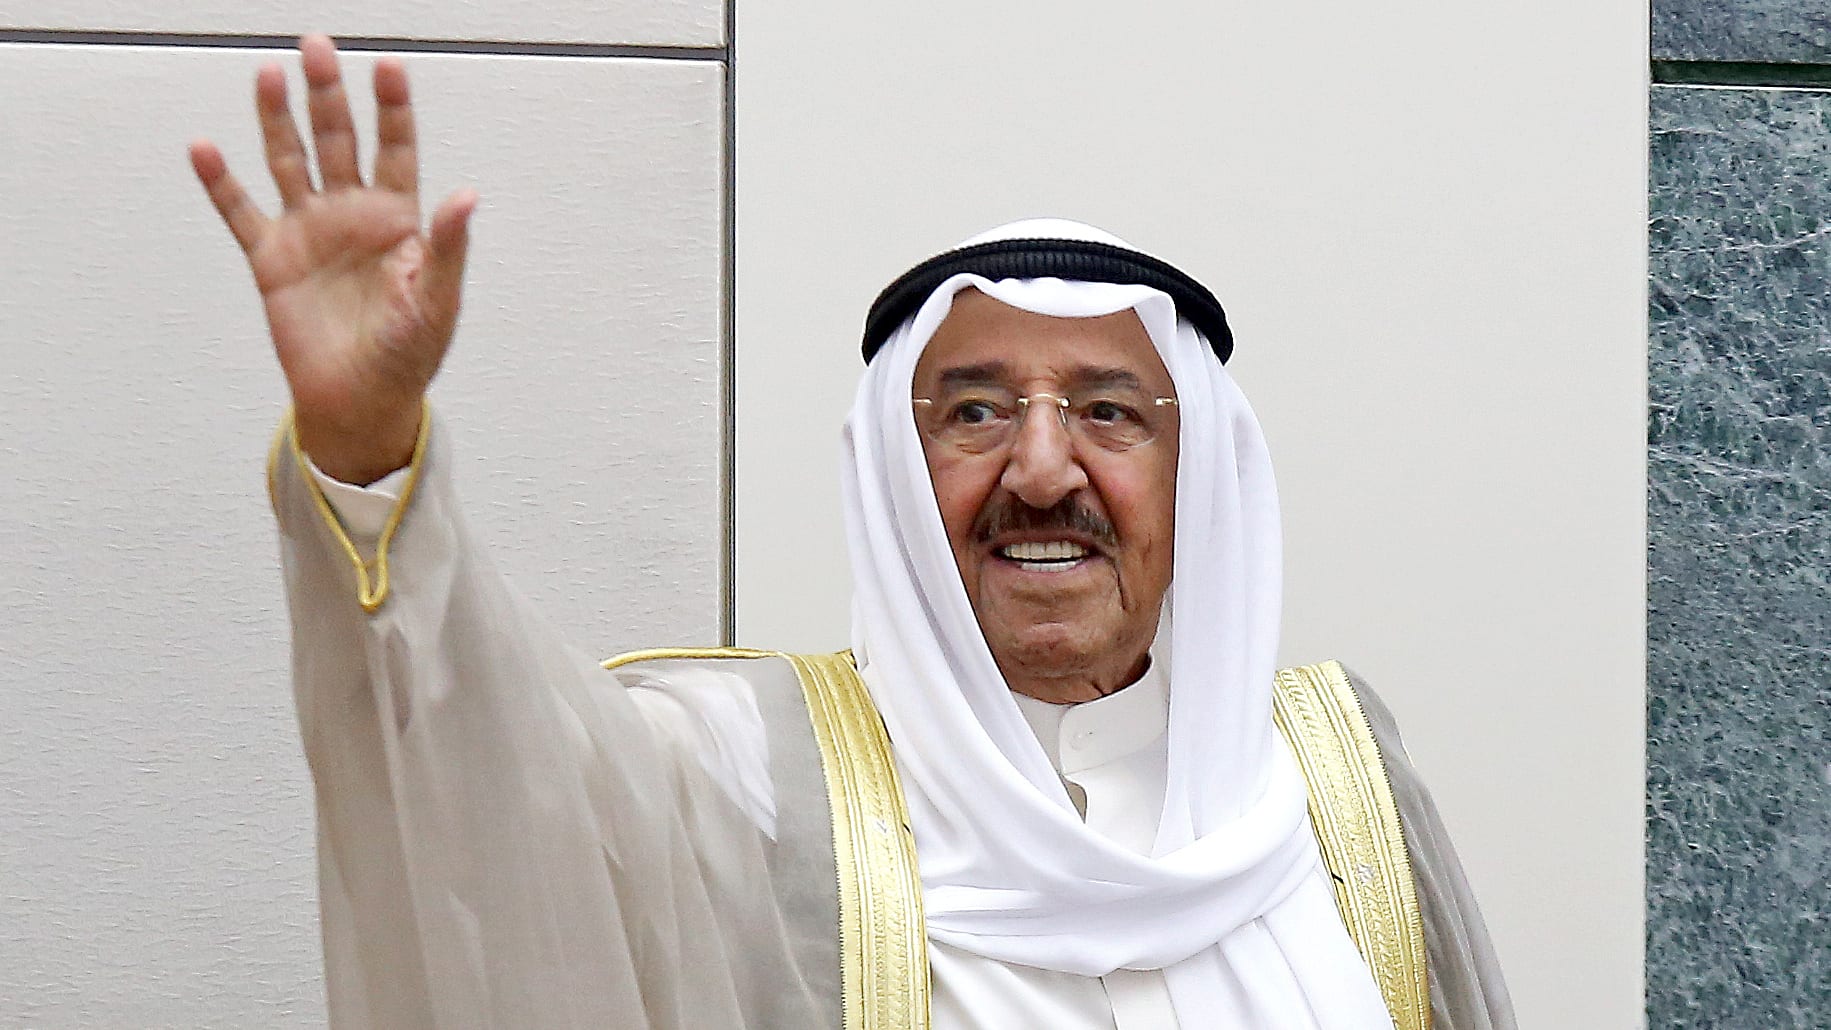 البنك الدولي يكرّم أمير الكويت لدعمه التنمية الاقتصادية